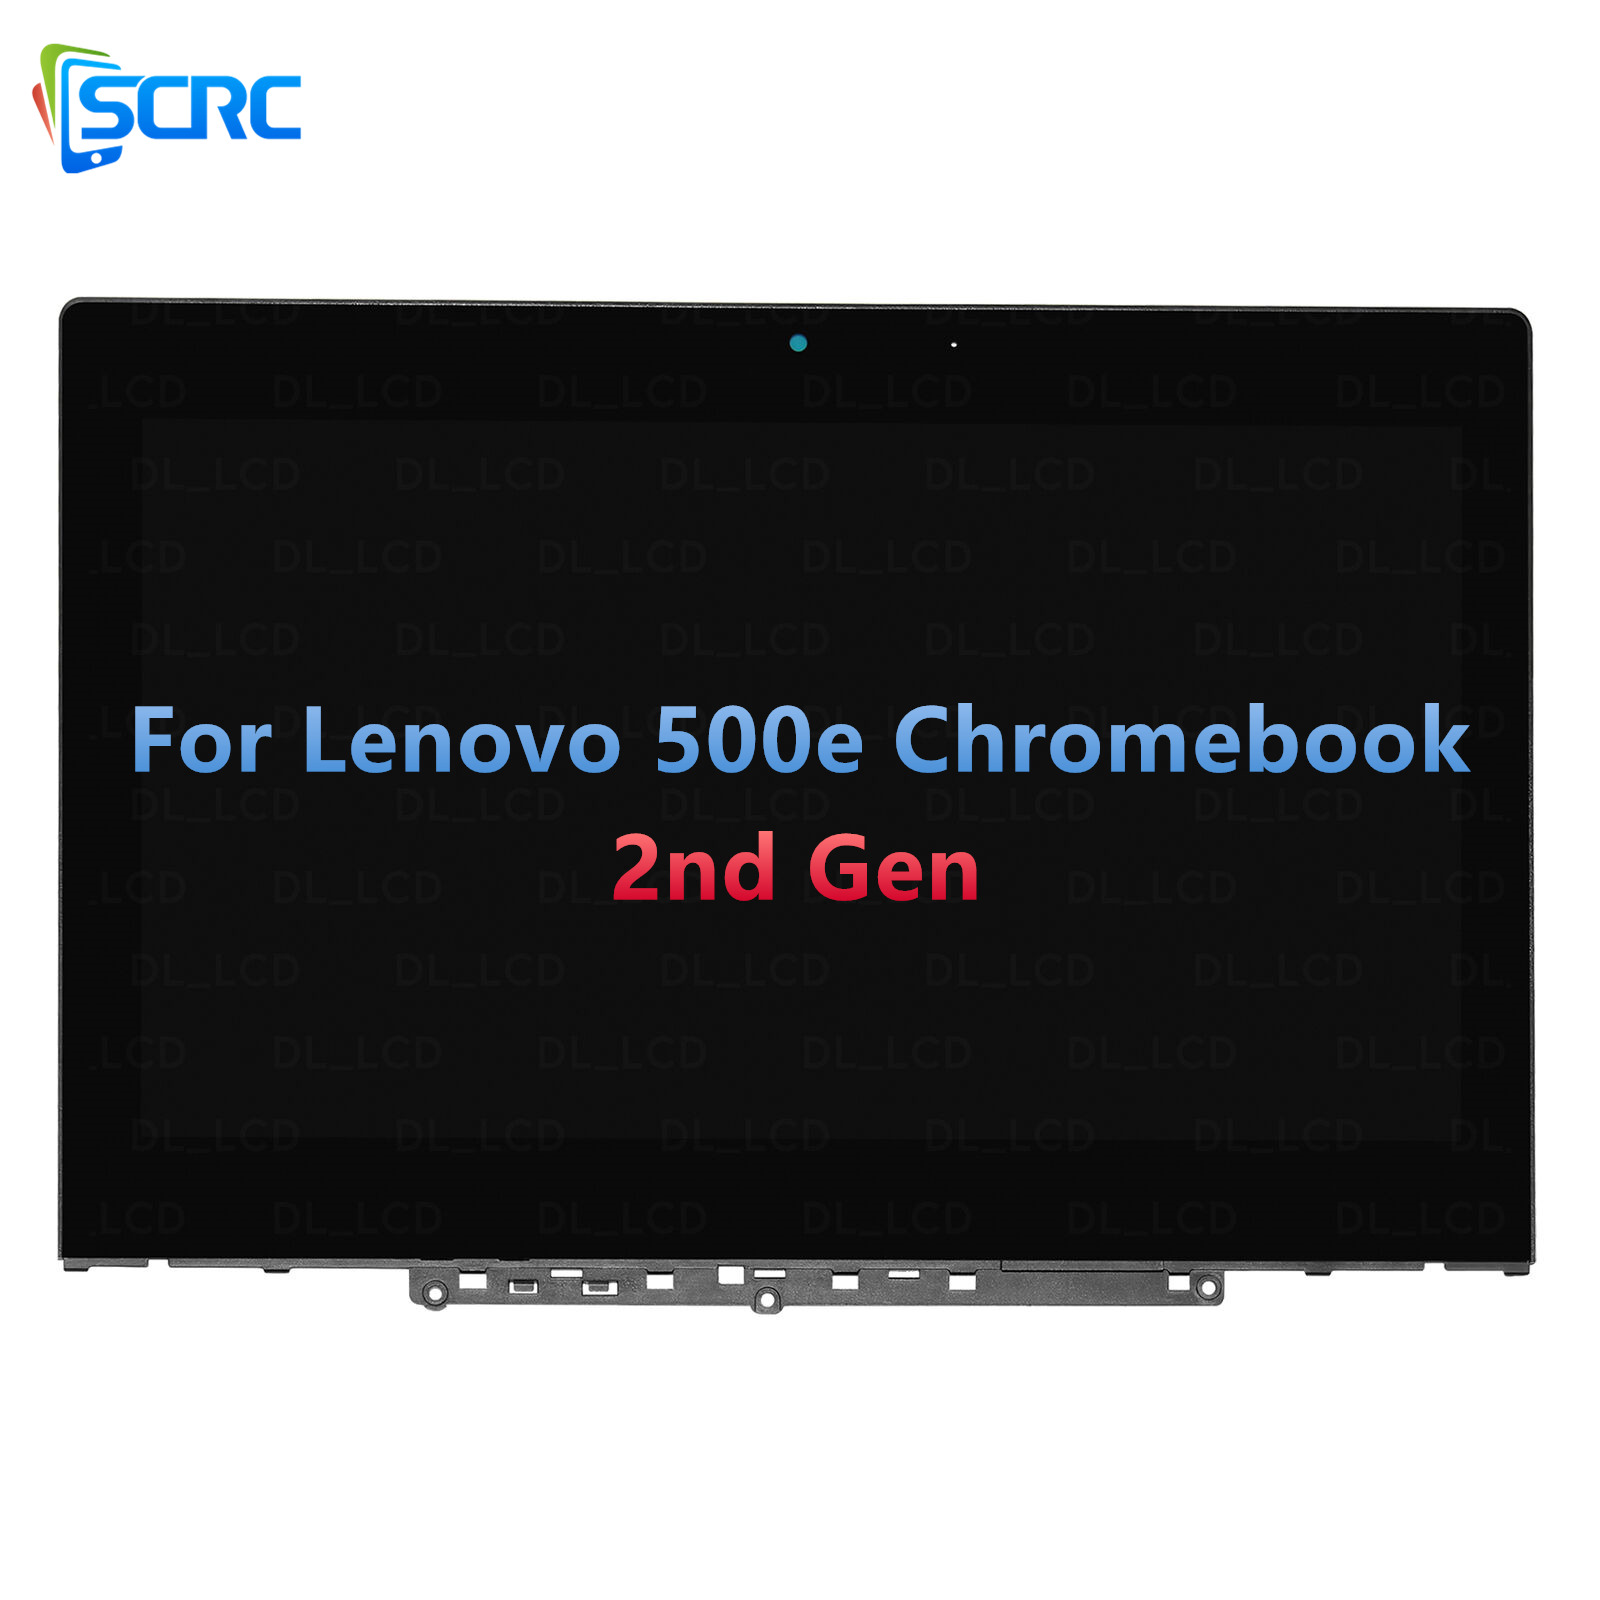 LCD-puuteekraani asendus Lenovo 500e 2. põlvkonna Chromebookile